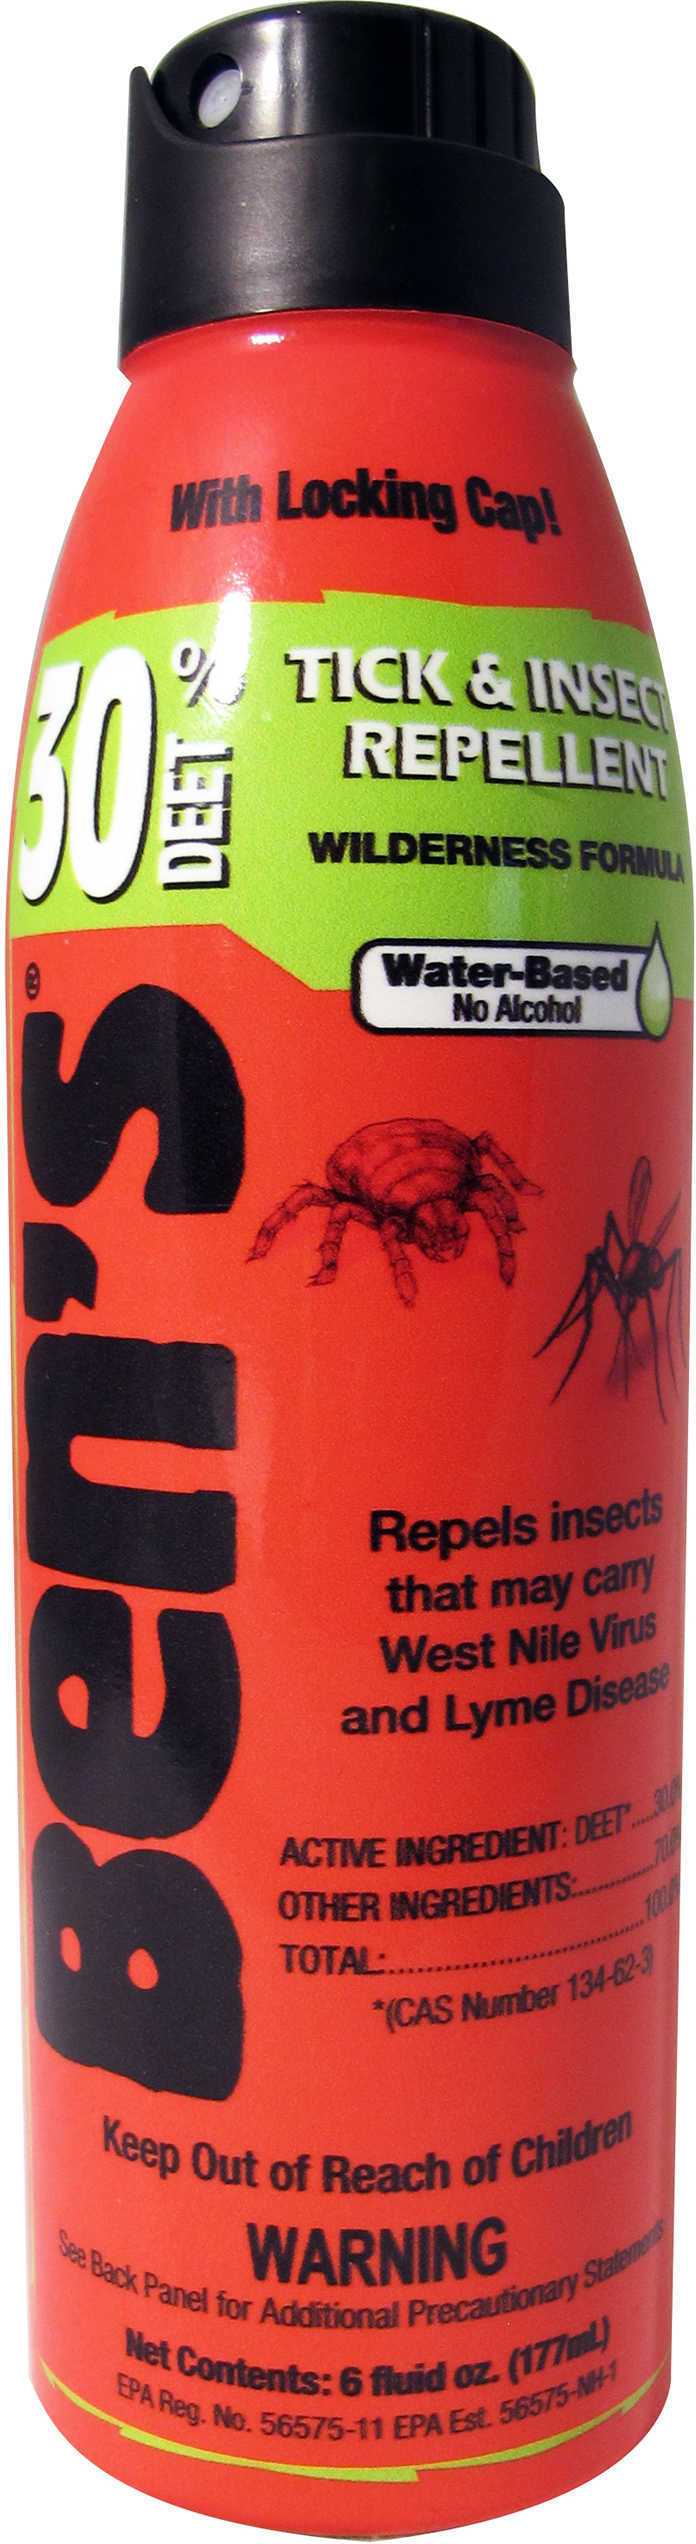 AMK BEN'S 30 INSECT Repellent 30% DEET 6Oz Eco Spray